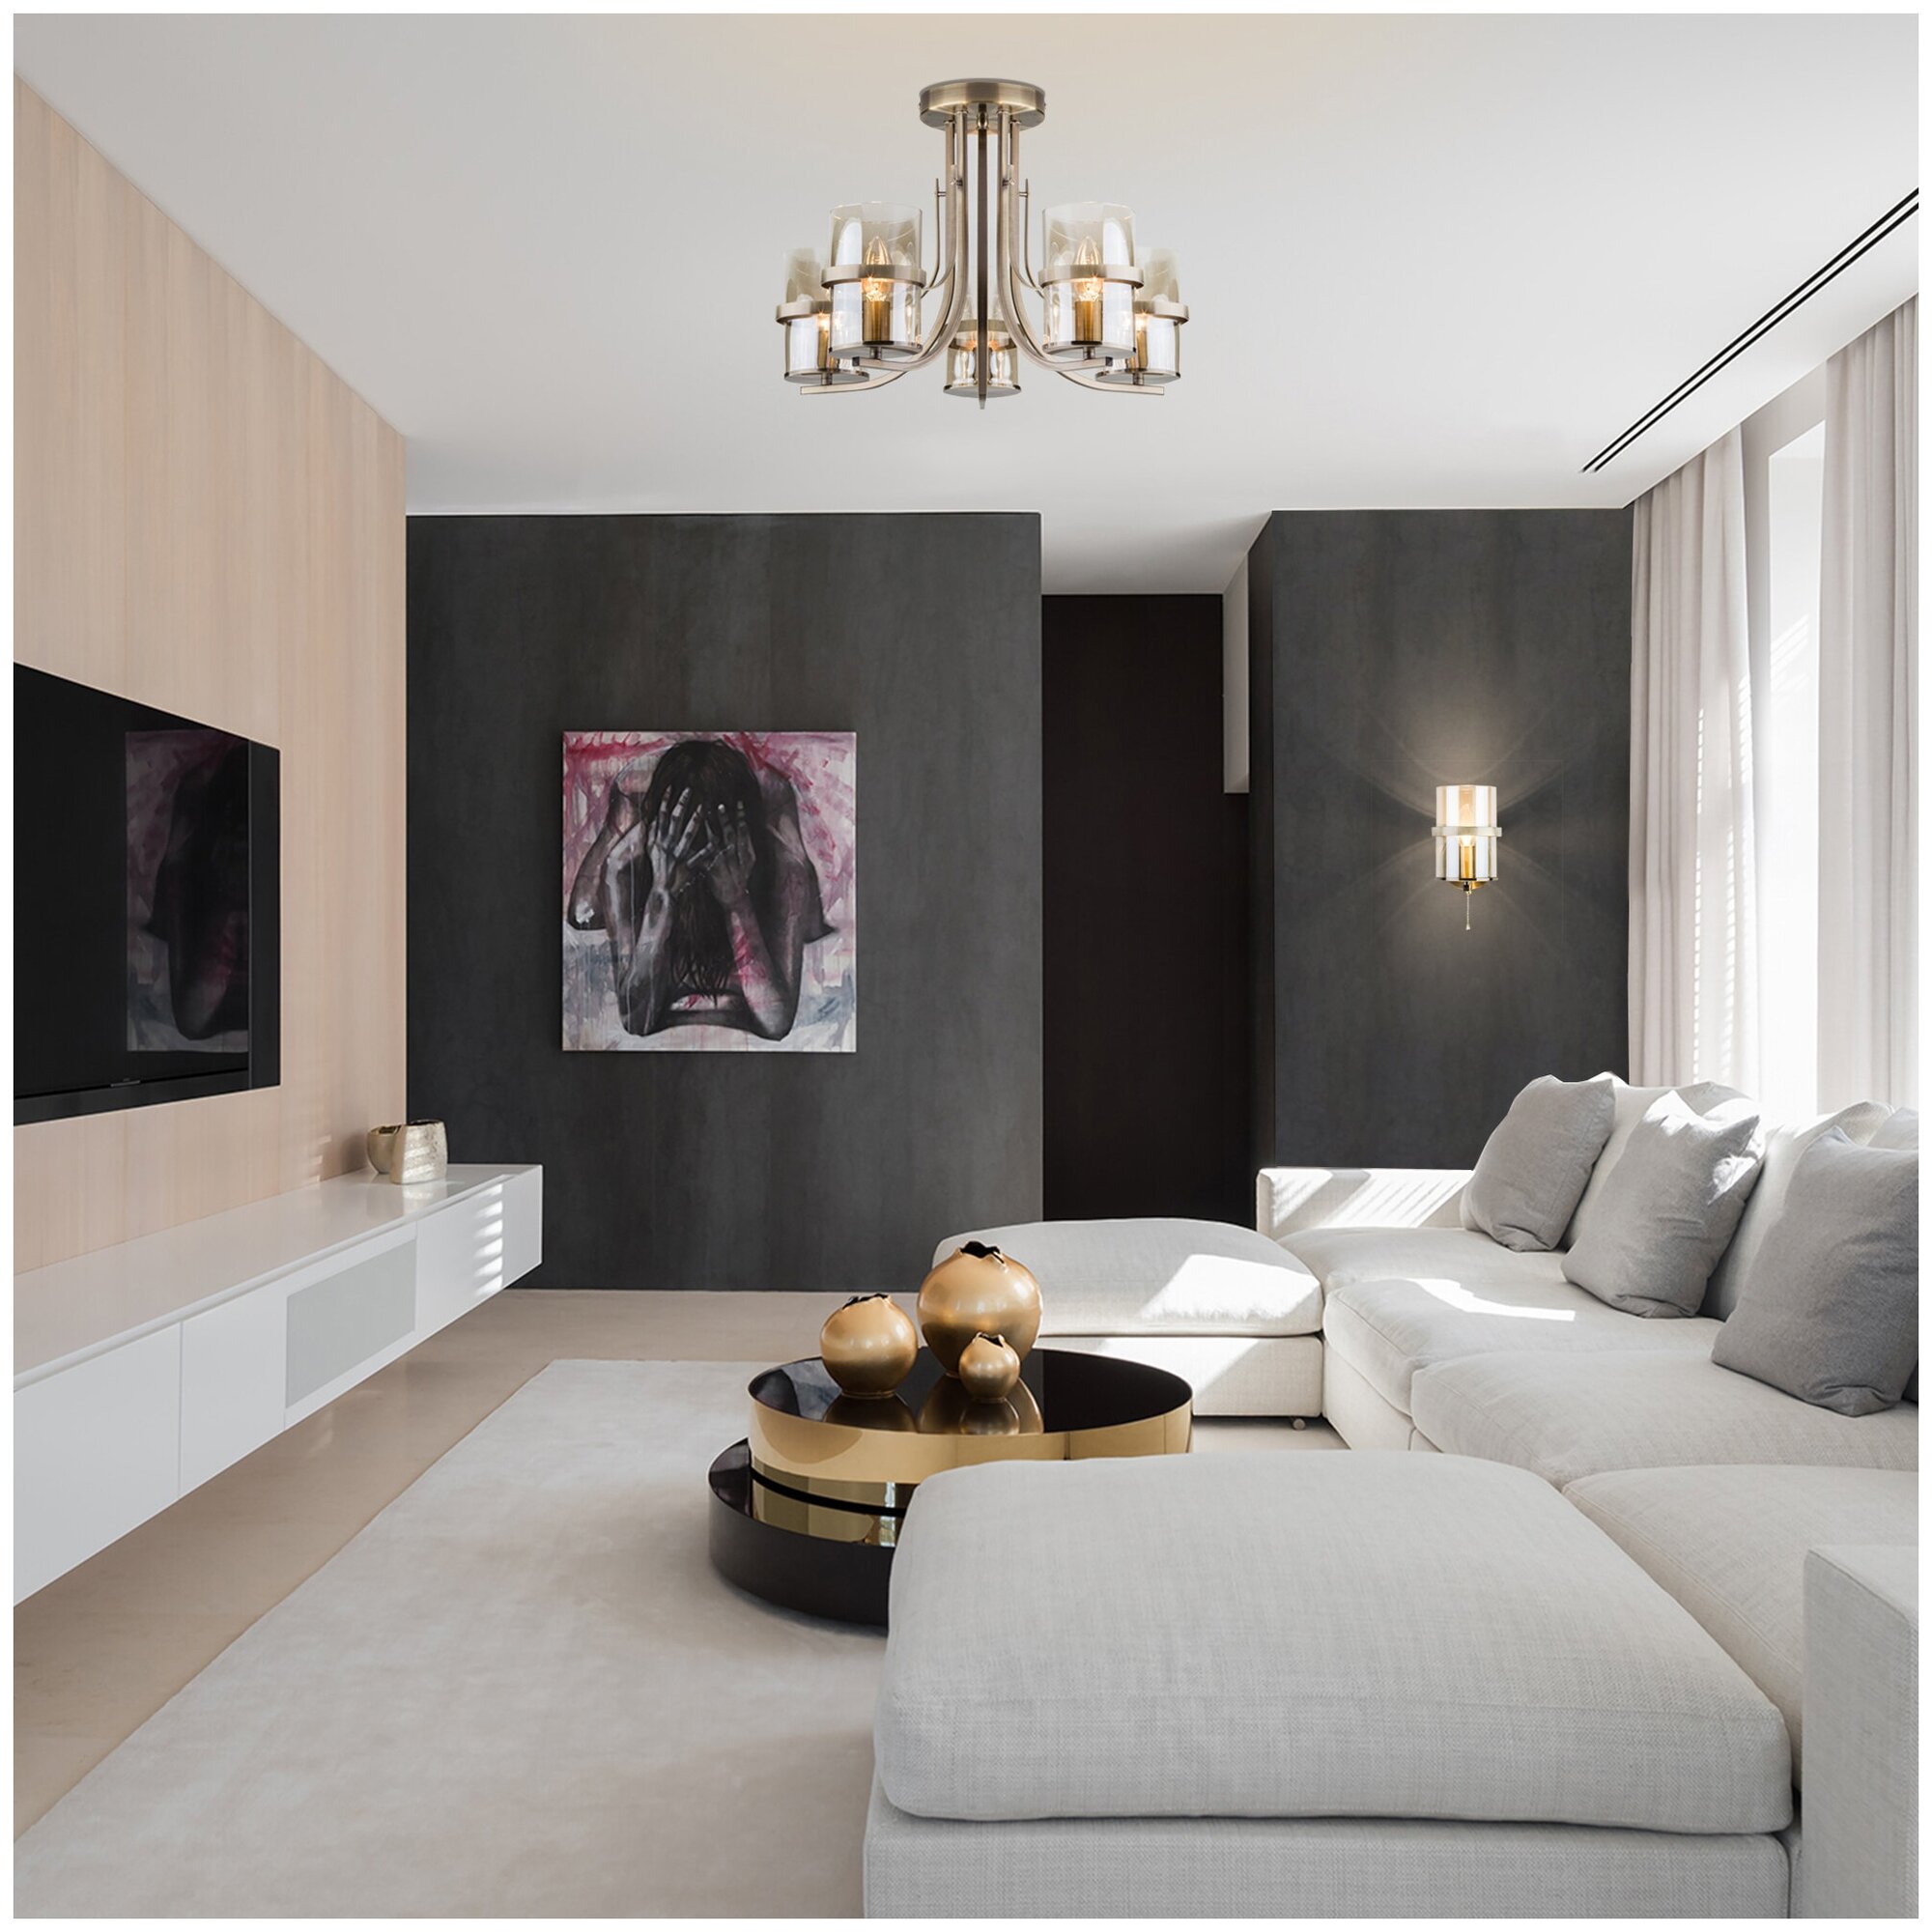 Дизайн интерьера гостиной в современном стиле в светлых тонах с темным